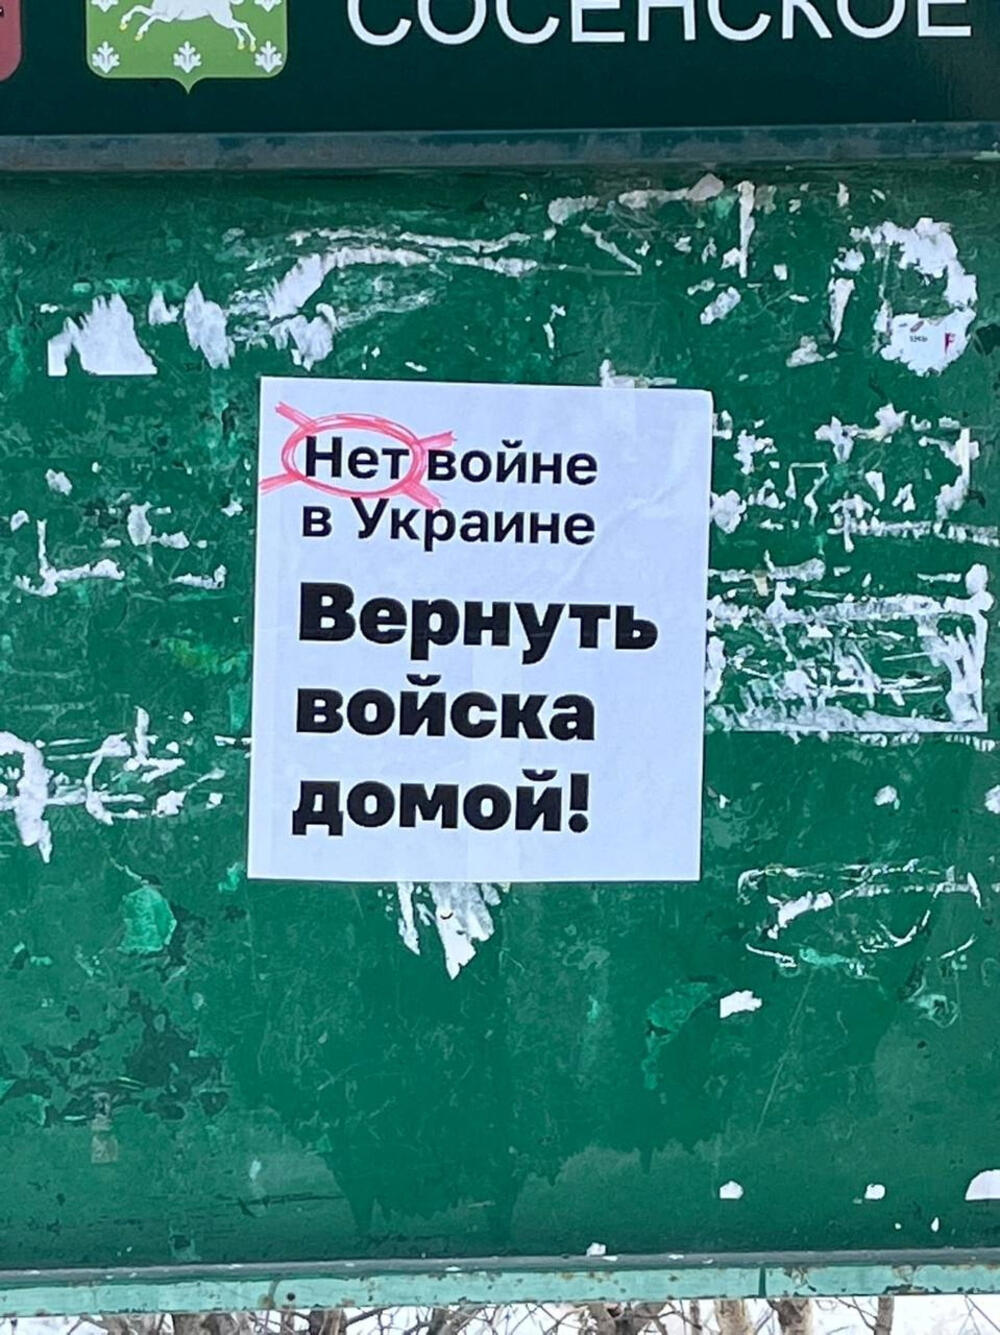 Jedan od antiratnih plakata koje je Lisa lijepila u Moskvi između februara i marta